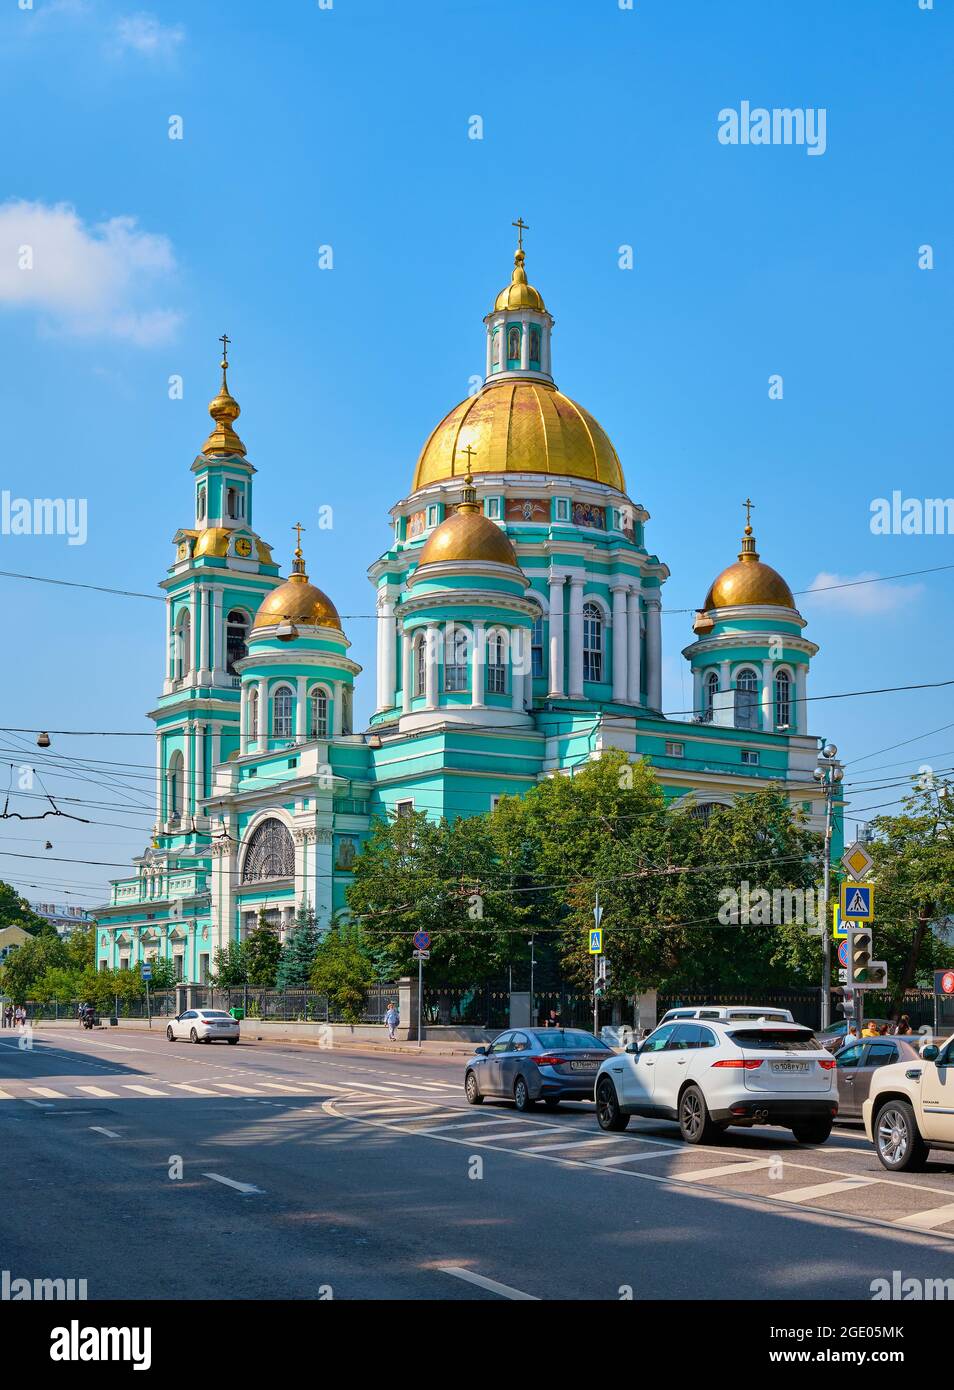 Vista de la Catedral de la Epifanía en Elokhovo, una de las iglesias ortodoxas más famosas construida en 1835-1845: Moscú, Rusia - 09 de agosto de 2021 Foto de stock